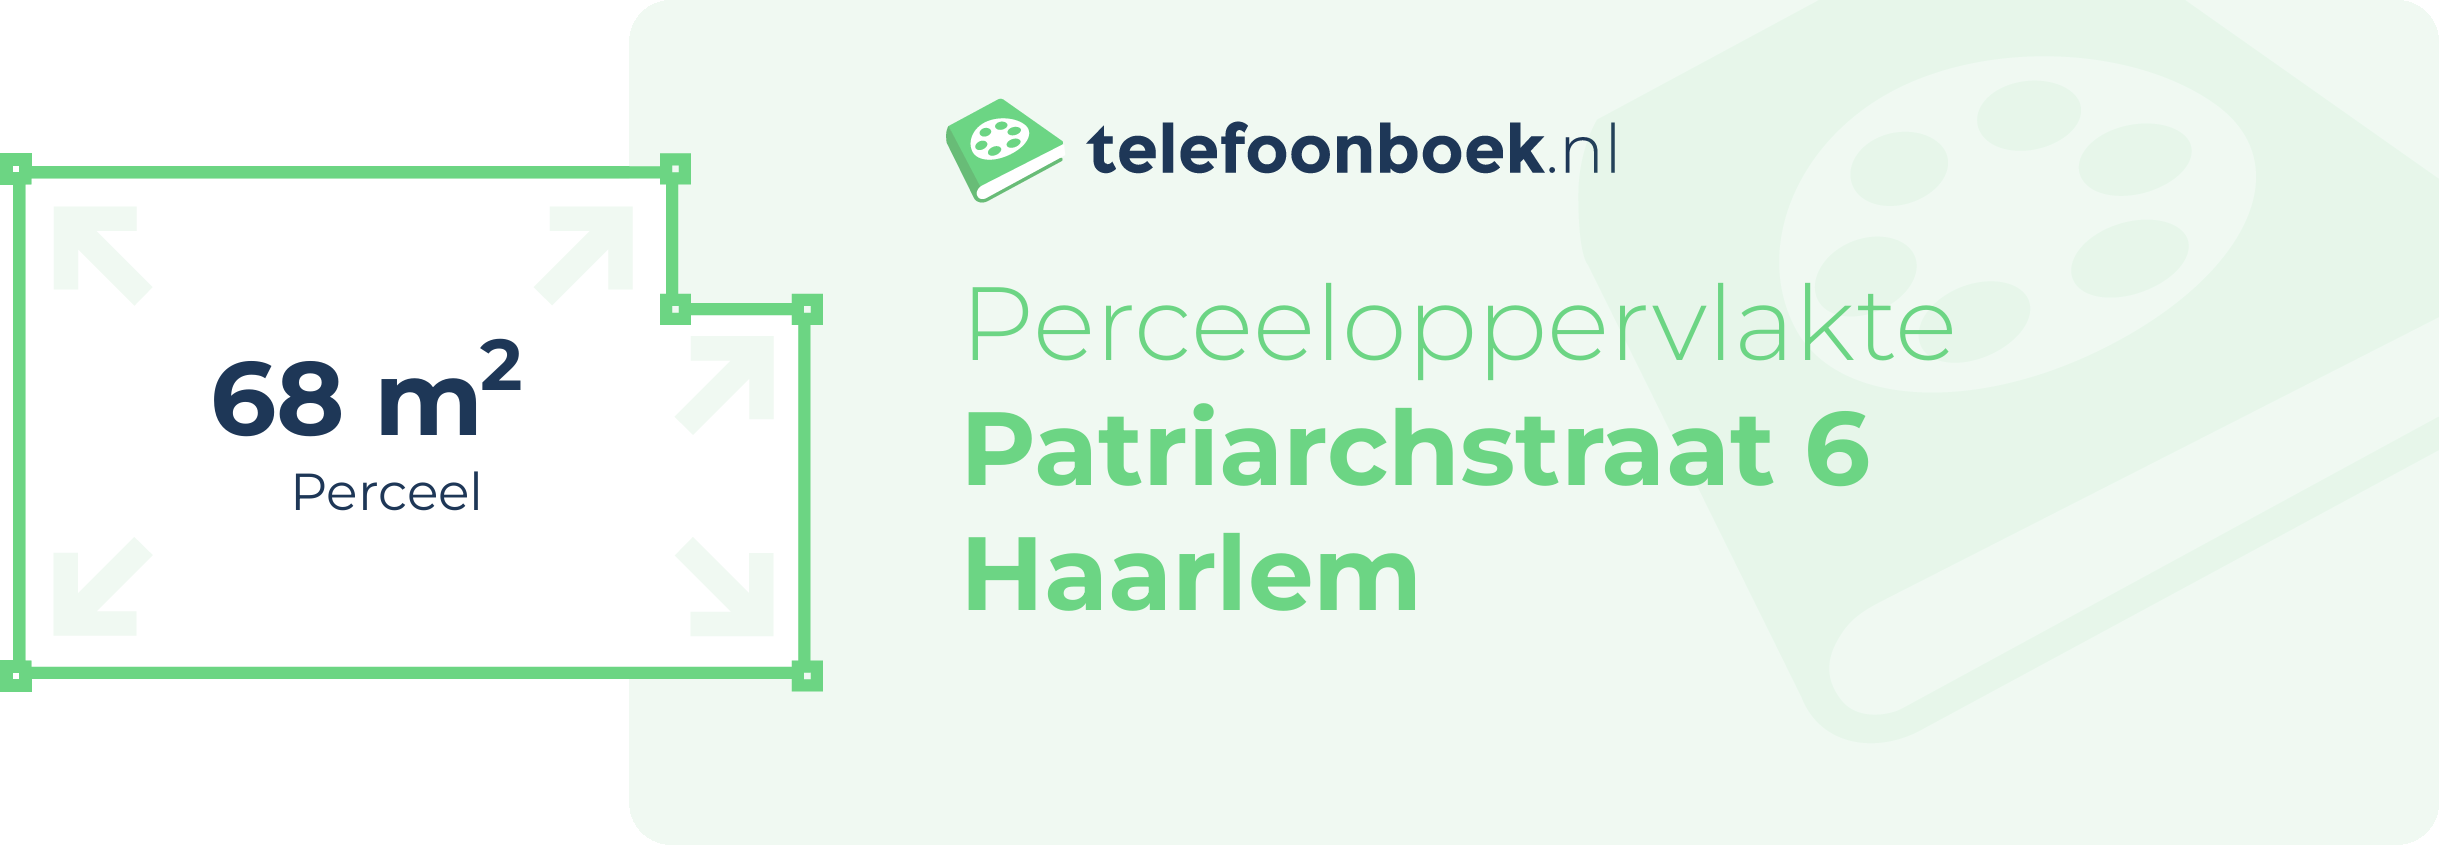 Perceeloppervlakte Patriarchstraat 6 Haarlem